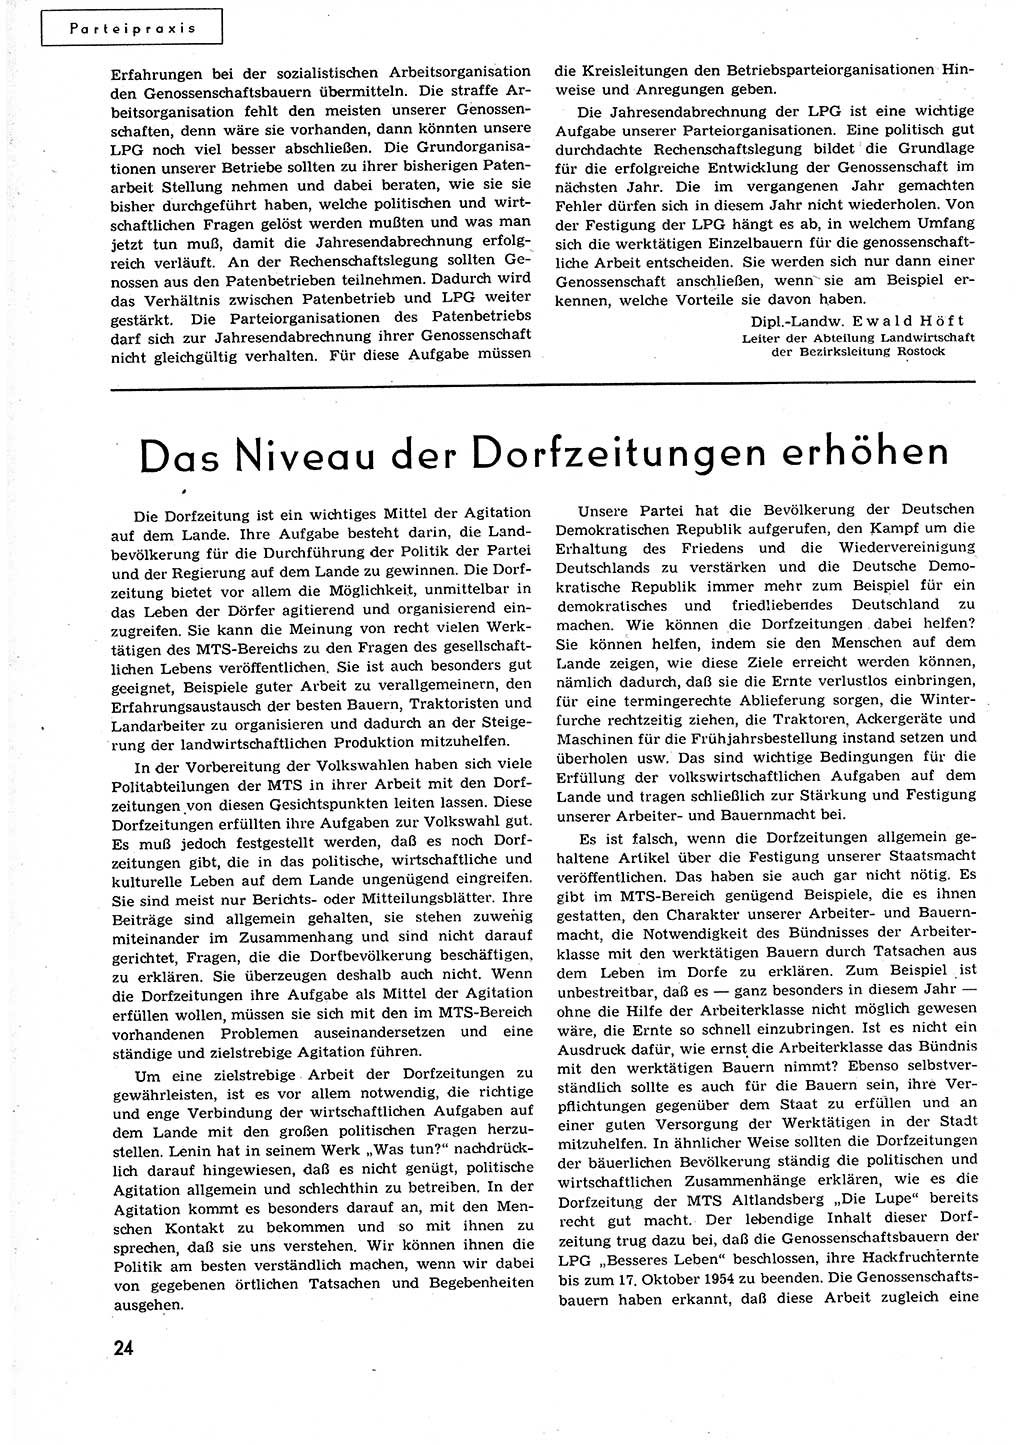 Neuer Weg (NW), Organ des Zentralkomitees (ZK) der SED (Sozialistische Einheitspartei Deutschlands) für alle Parteiarbeiter, 9. Jahrgang [Deutsche Demokratische Republik (DDR)] 1954, Heft 20/24 (NW ZK SED DDR 1954, H. 20/24)